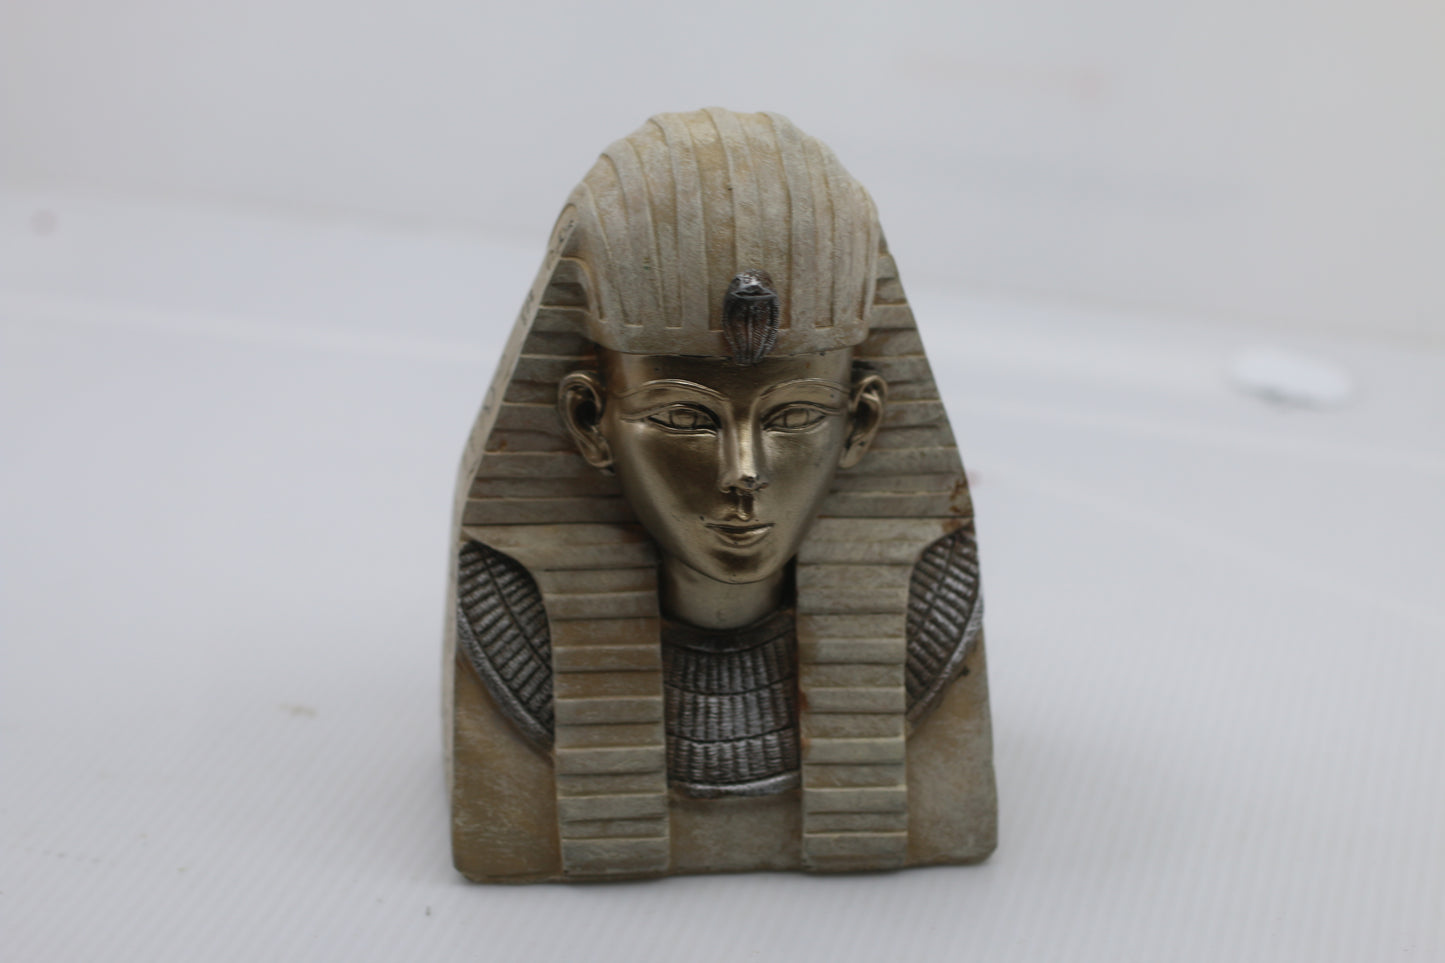 Ancient Egyptian Pharaoh Ancient Statue, King Tutankhamen Gift Egypt Lover